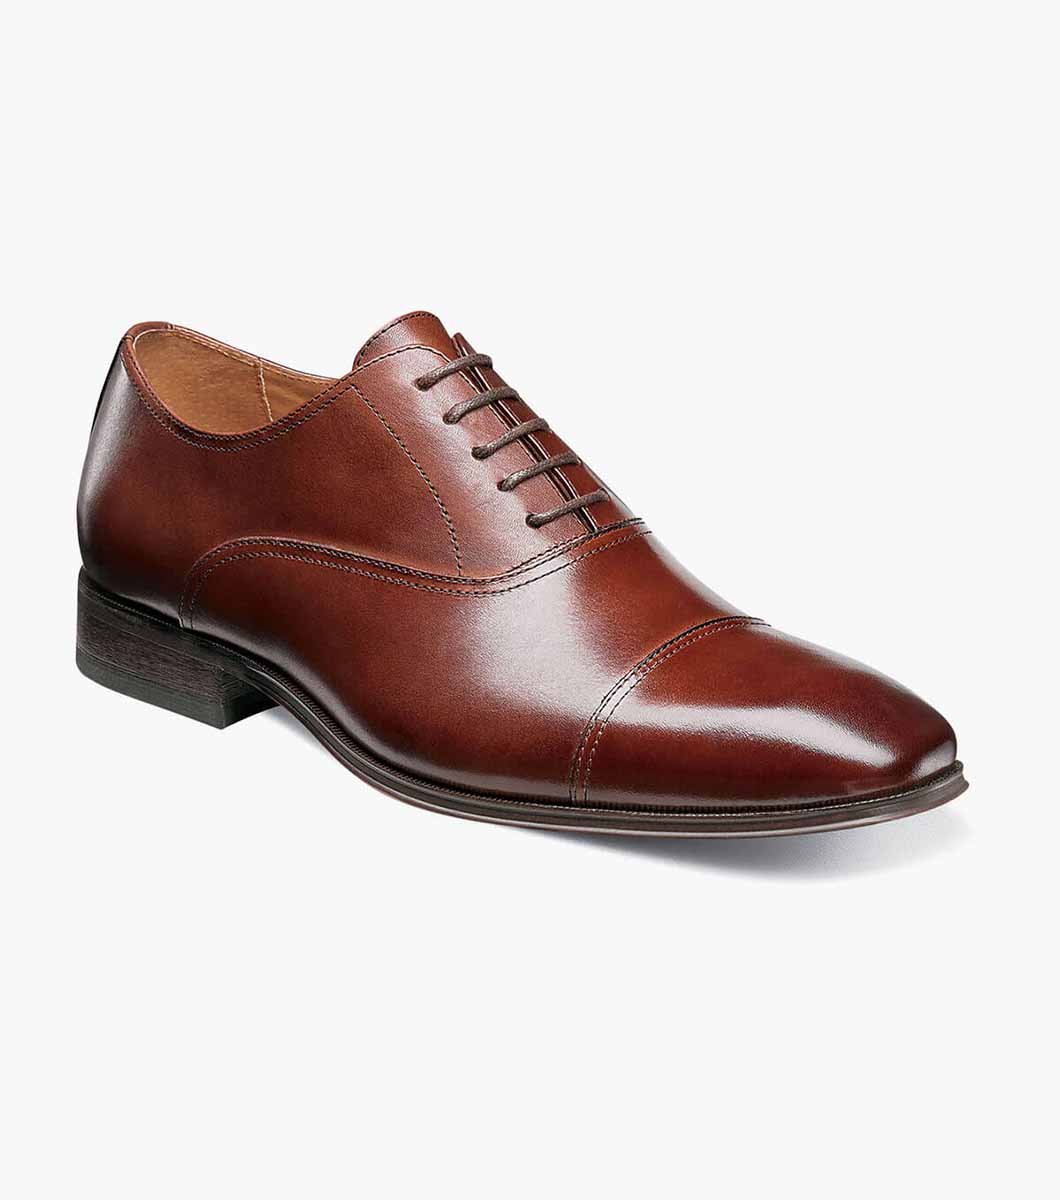 Mens Shoes Florsheim Corbetta Cap Toe Oxford Cognac Leather 14180-221